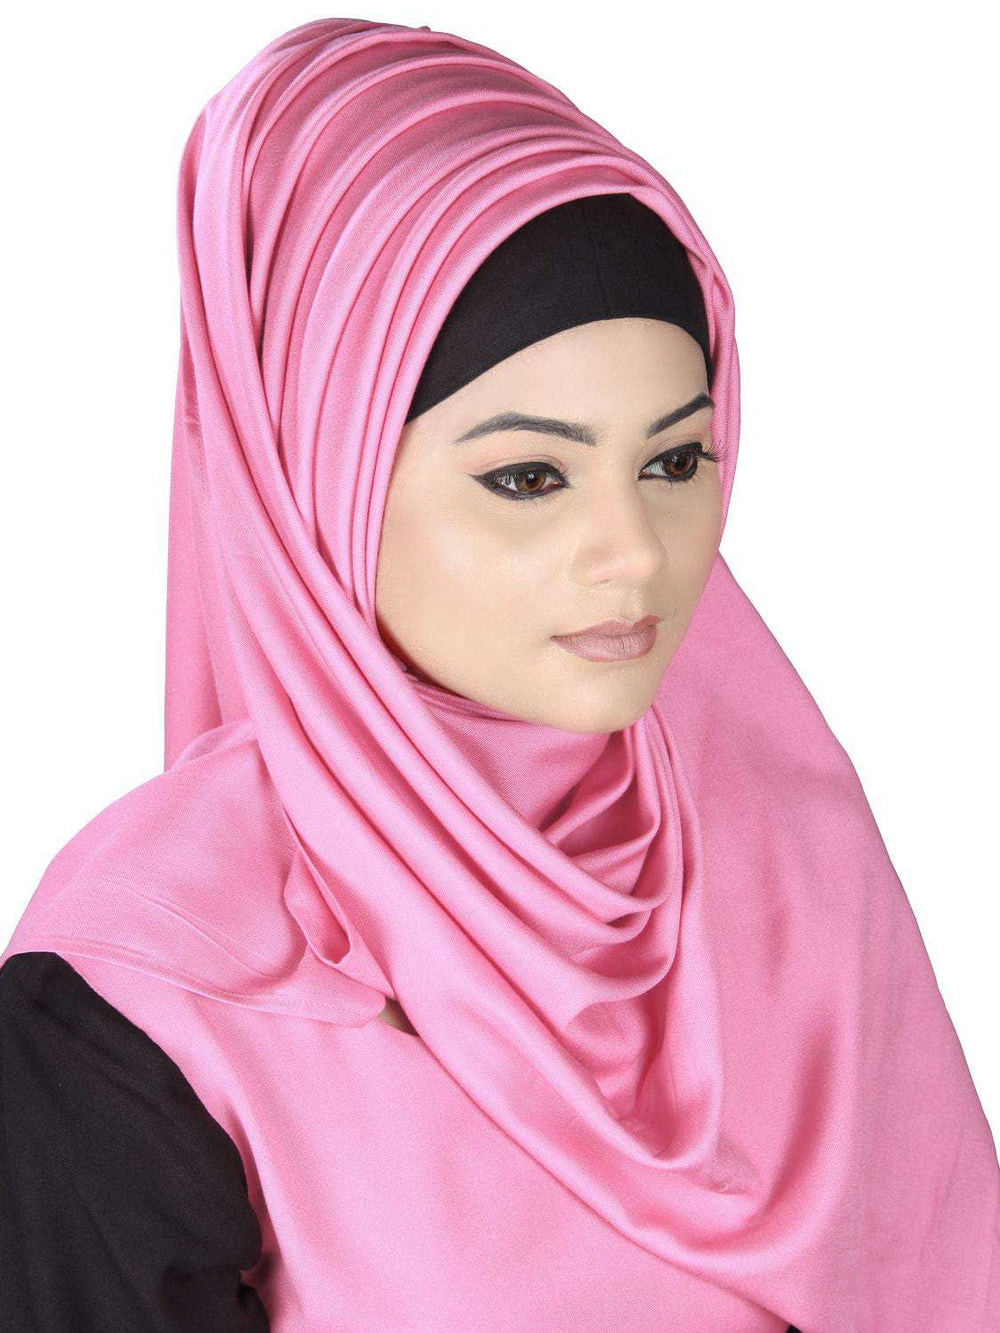 Nyasia Rayon Abaya Hijab